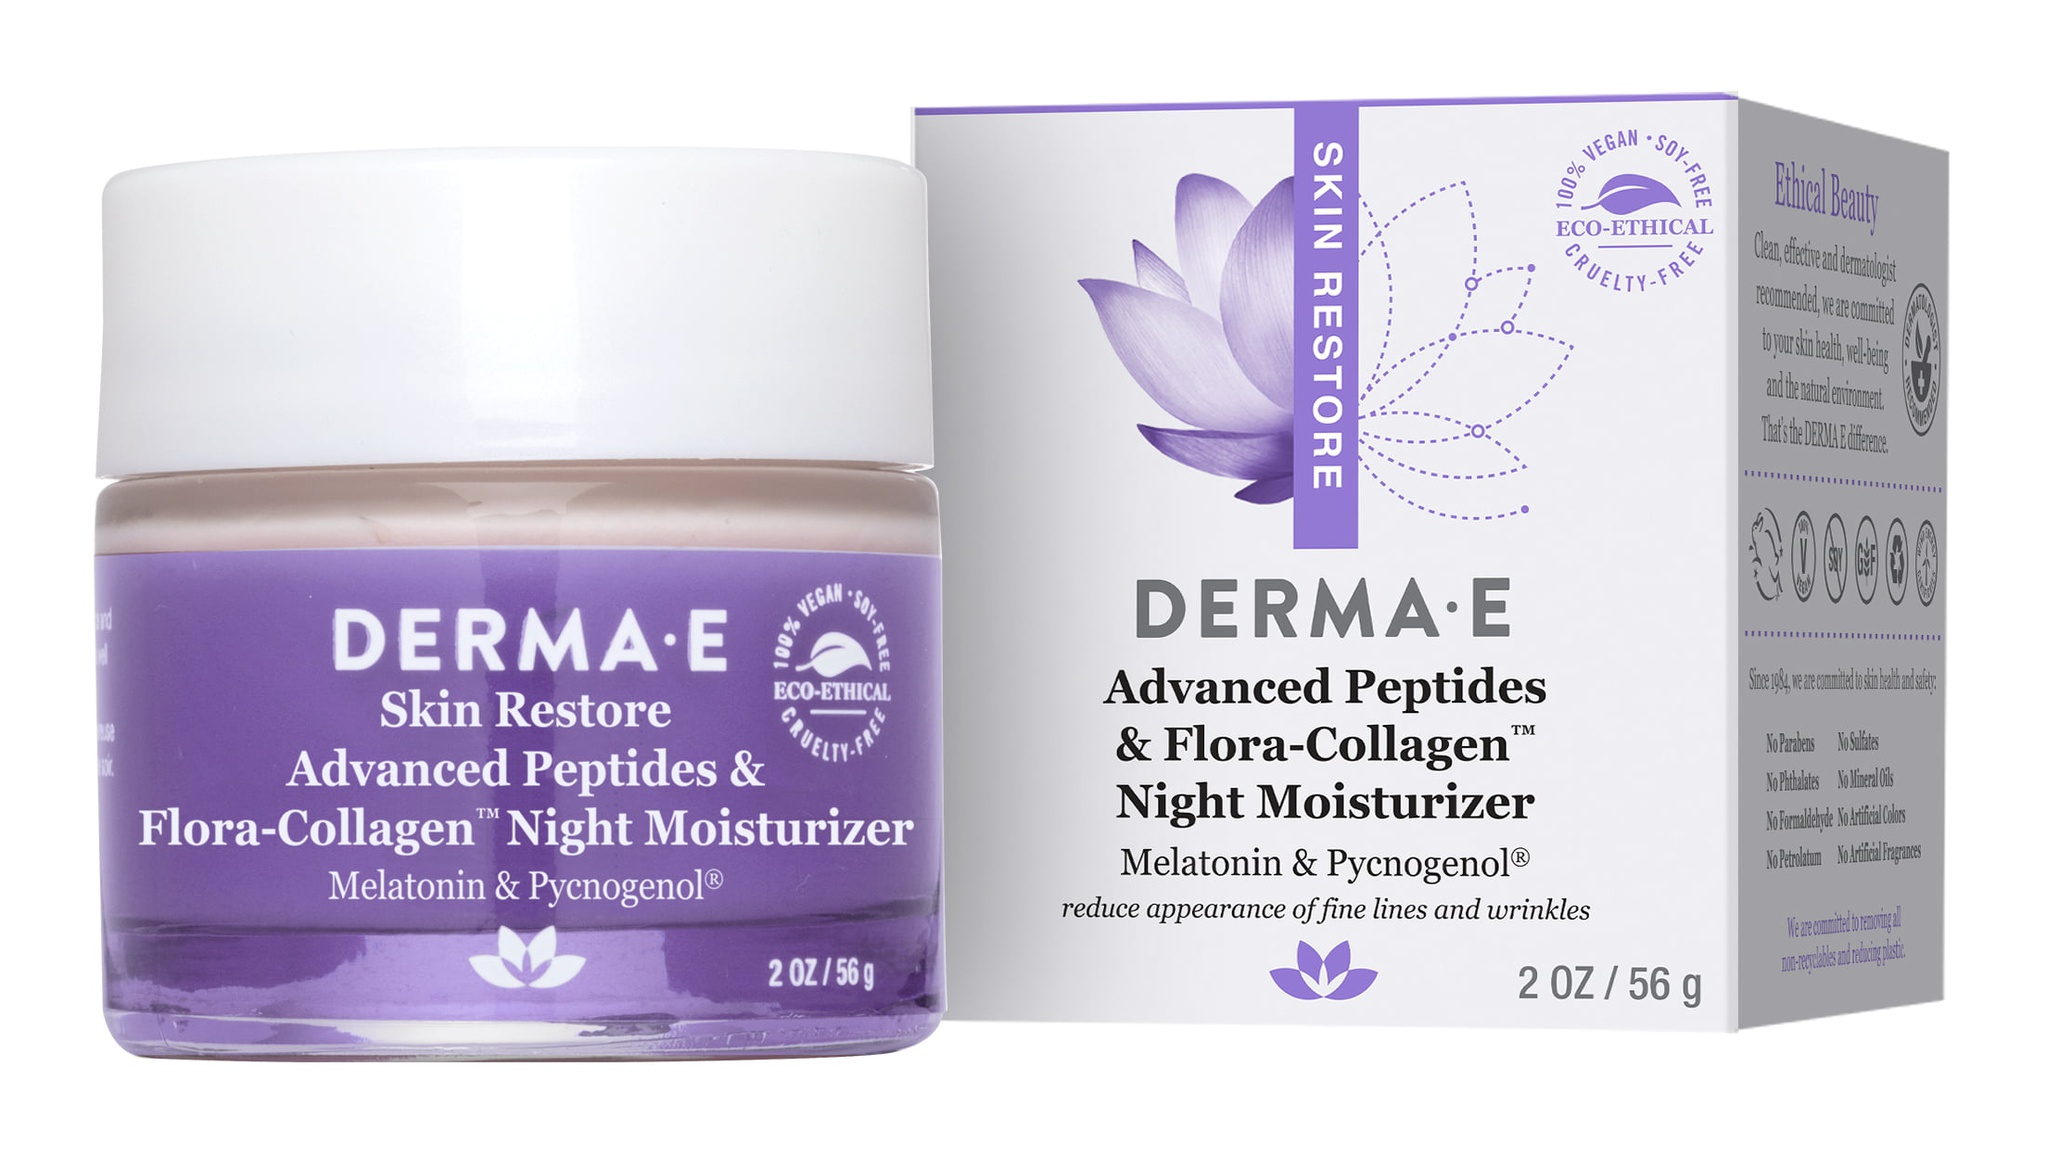 Derma E Advanced Peptides & Collagen Night Face Moisturizer